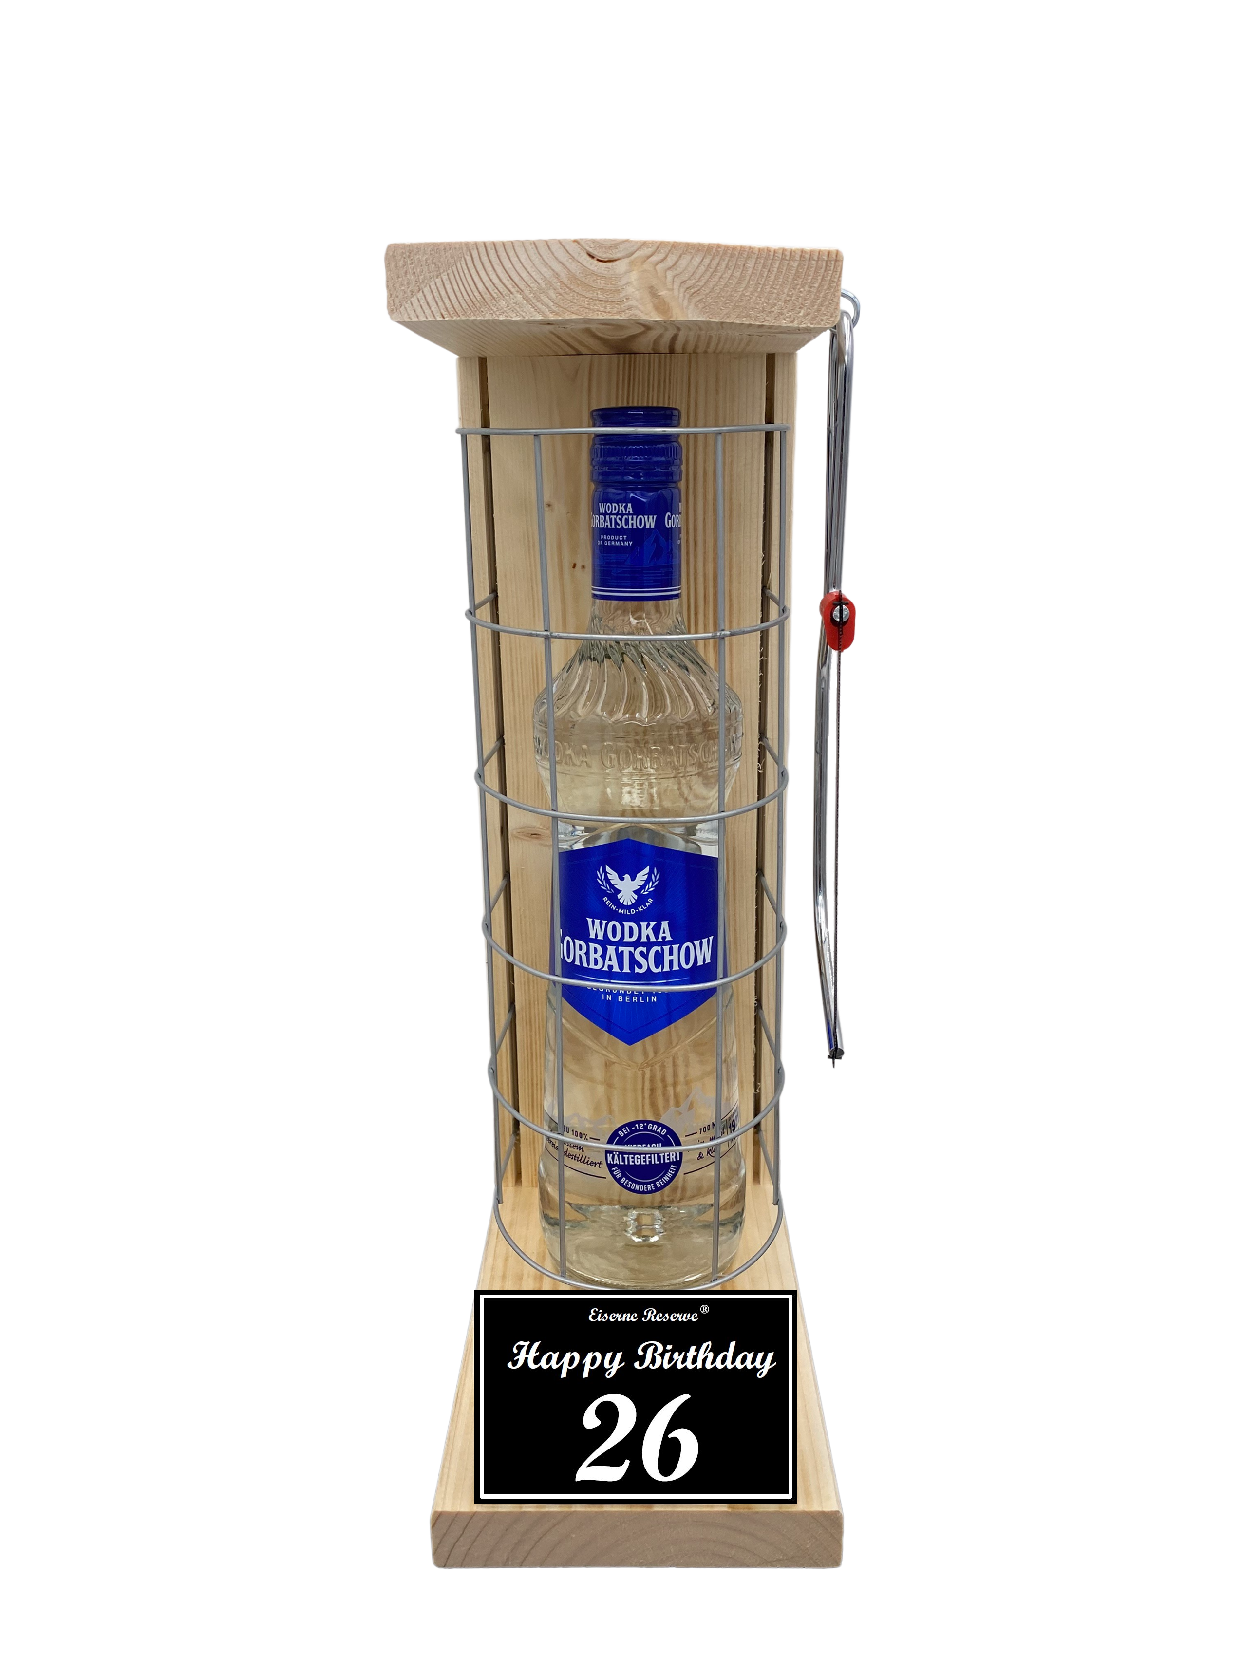 Wodka Geschenk zum 26 Geburtstag - Eiserne Reserve Gitterkäfig